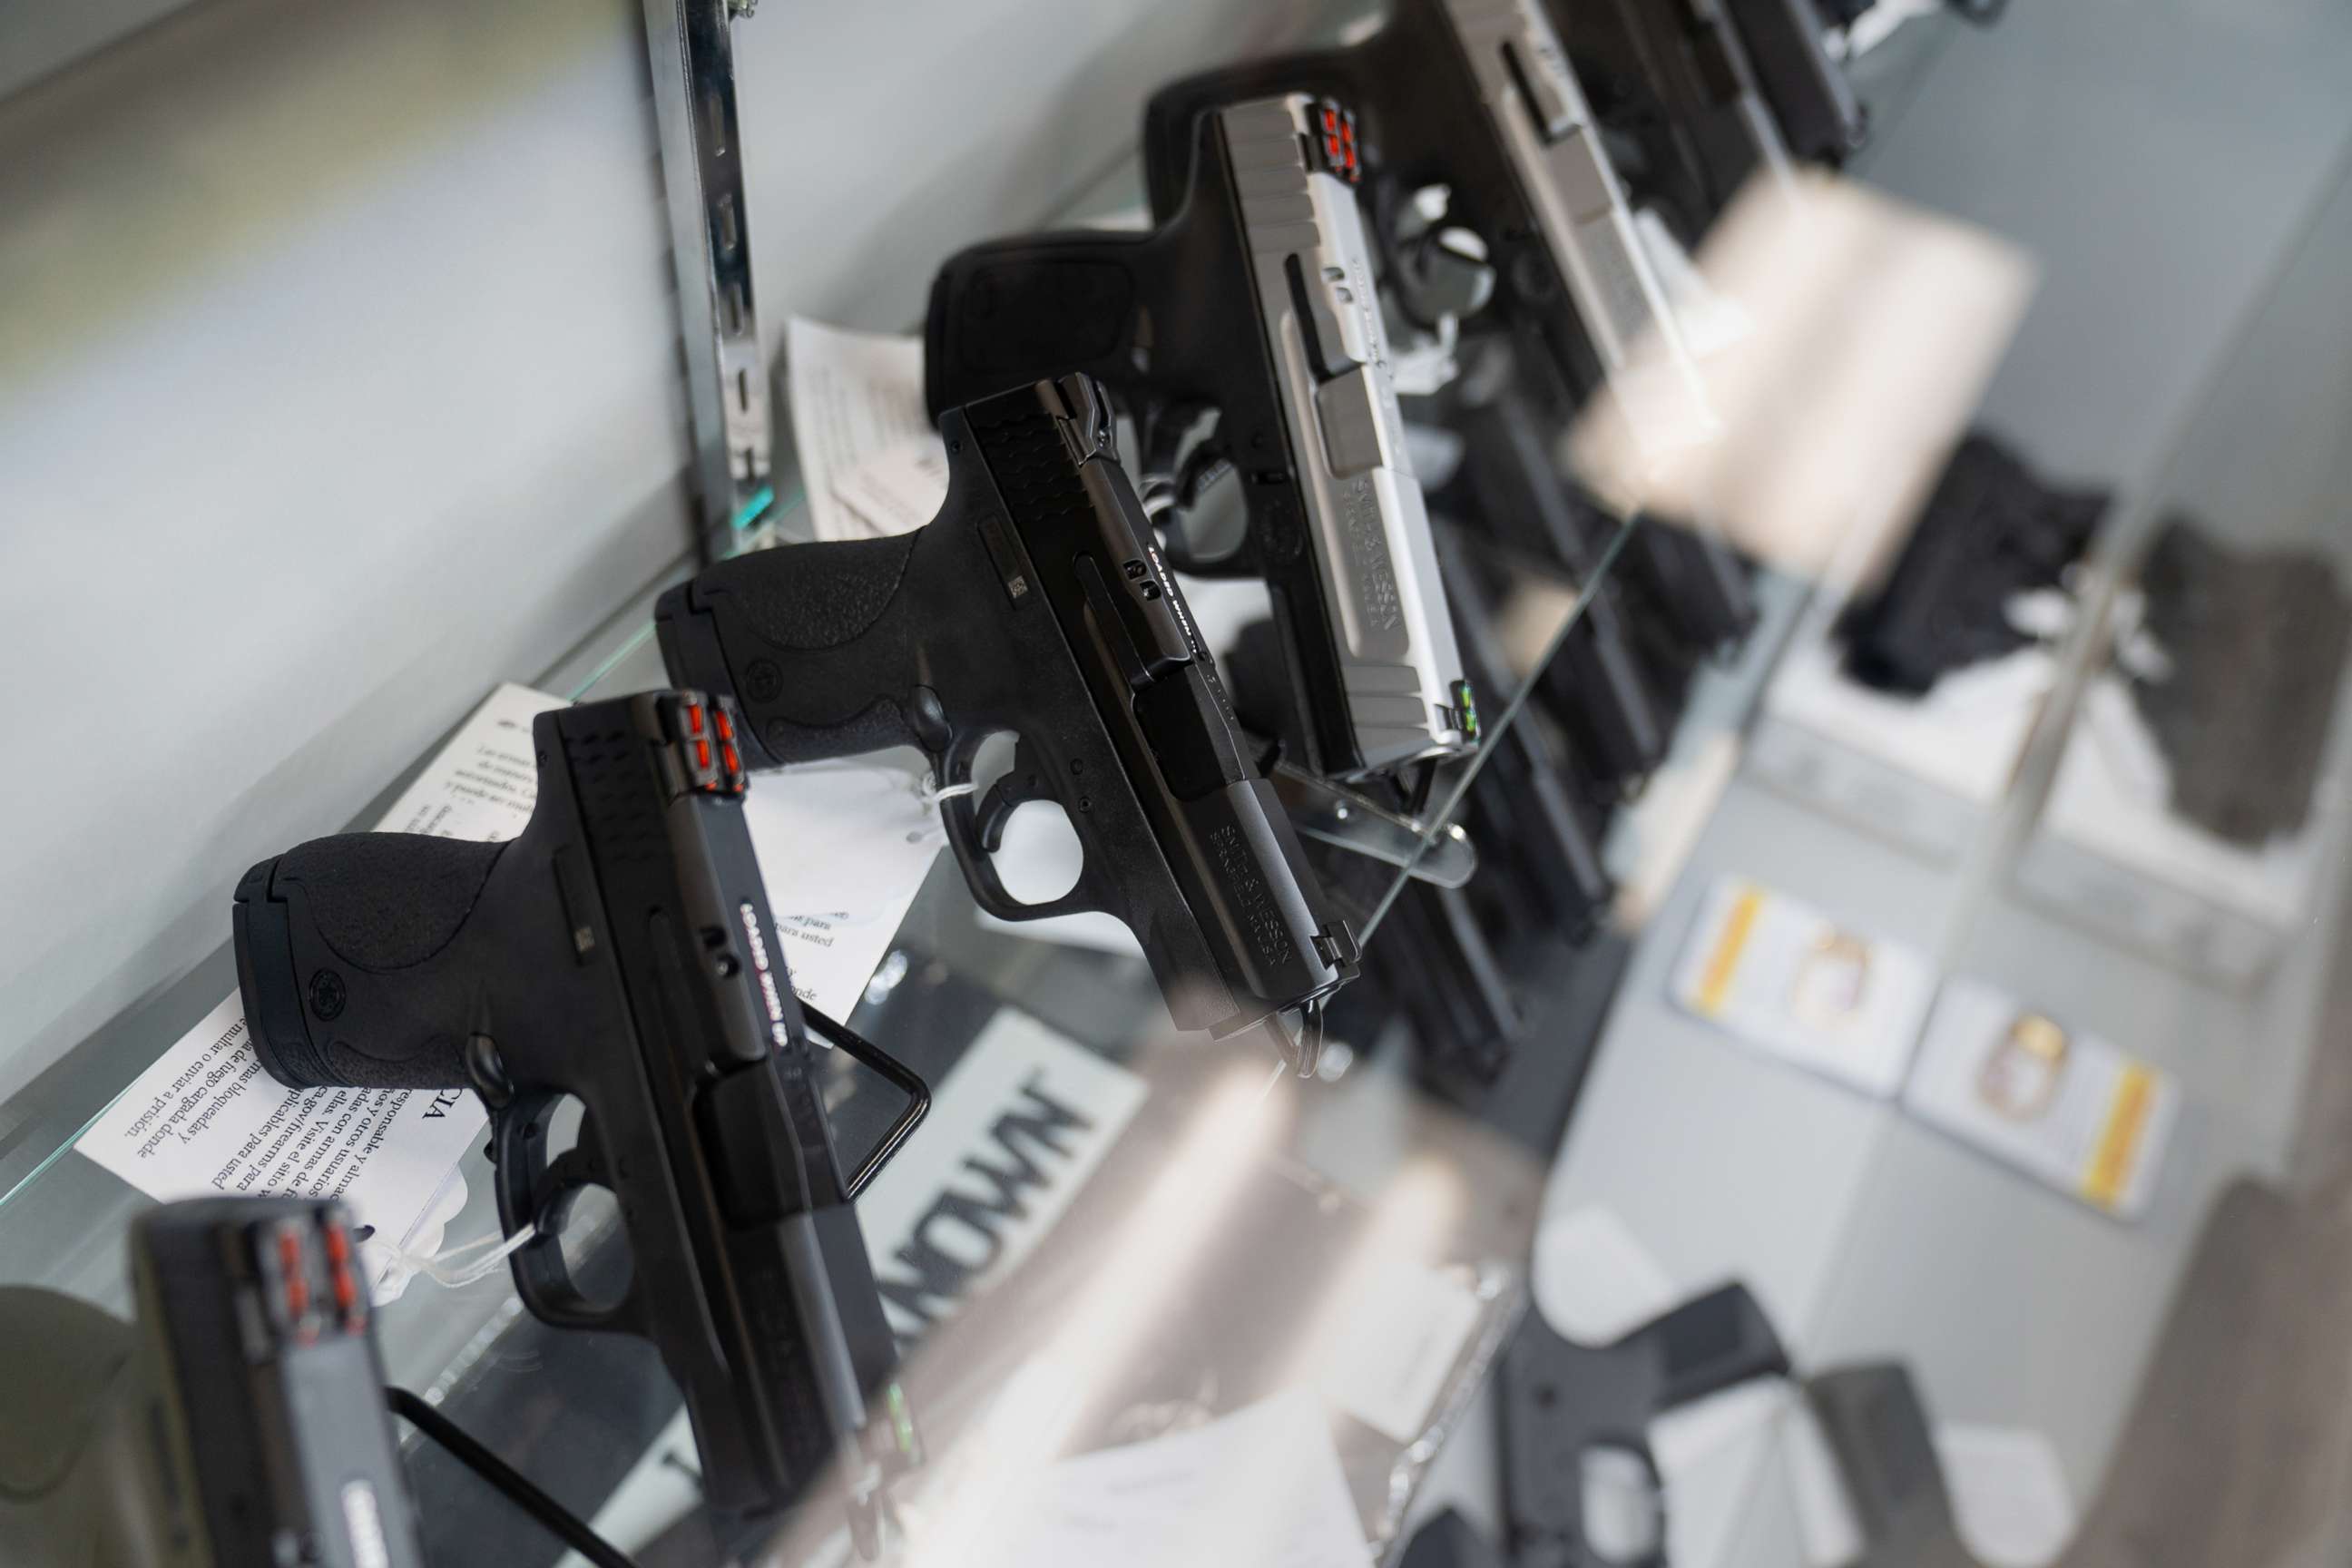 PHOTO: Semi-automatic pistols for sale at a store in El Cajon, Calif., April 26, 2021.